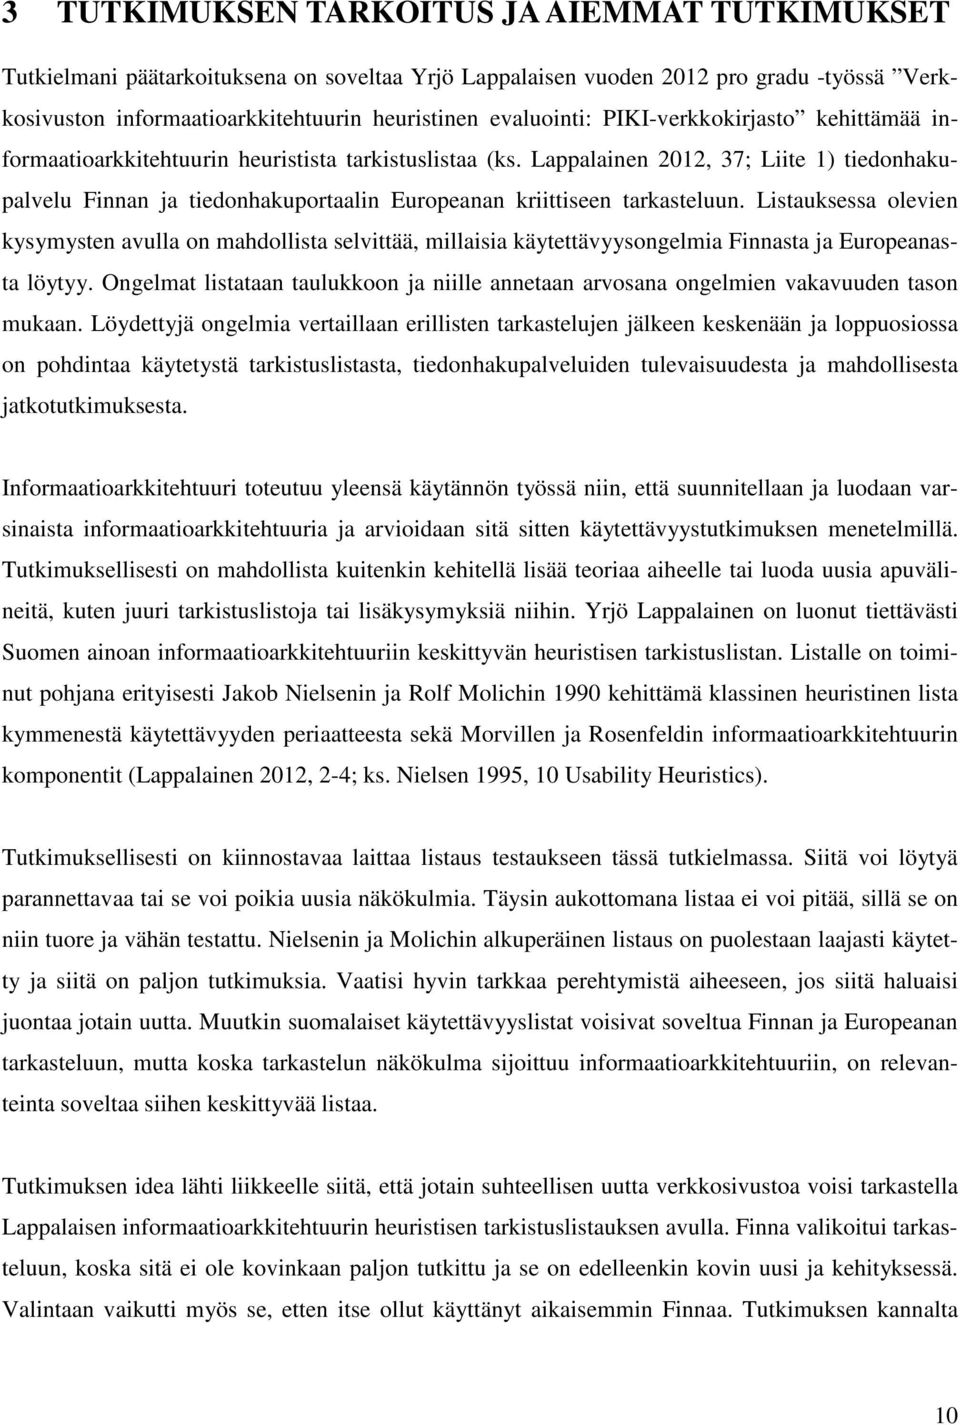 Lappalainen 2012, 37; Liite 1) tiedonhakupalvelu Finnan ja tiedonhakuportaalin Europeanan kriittiseen tarkasteluun.